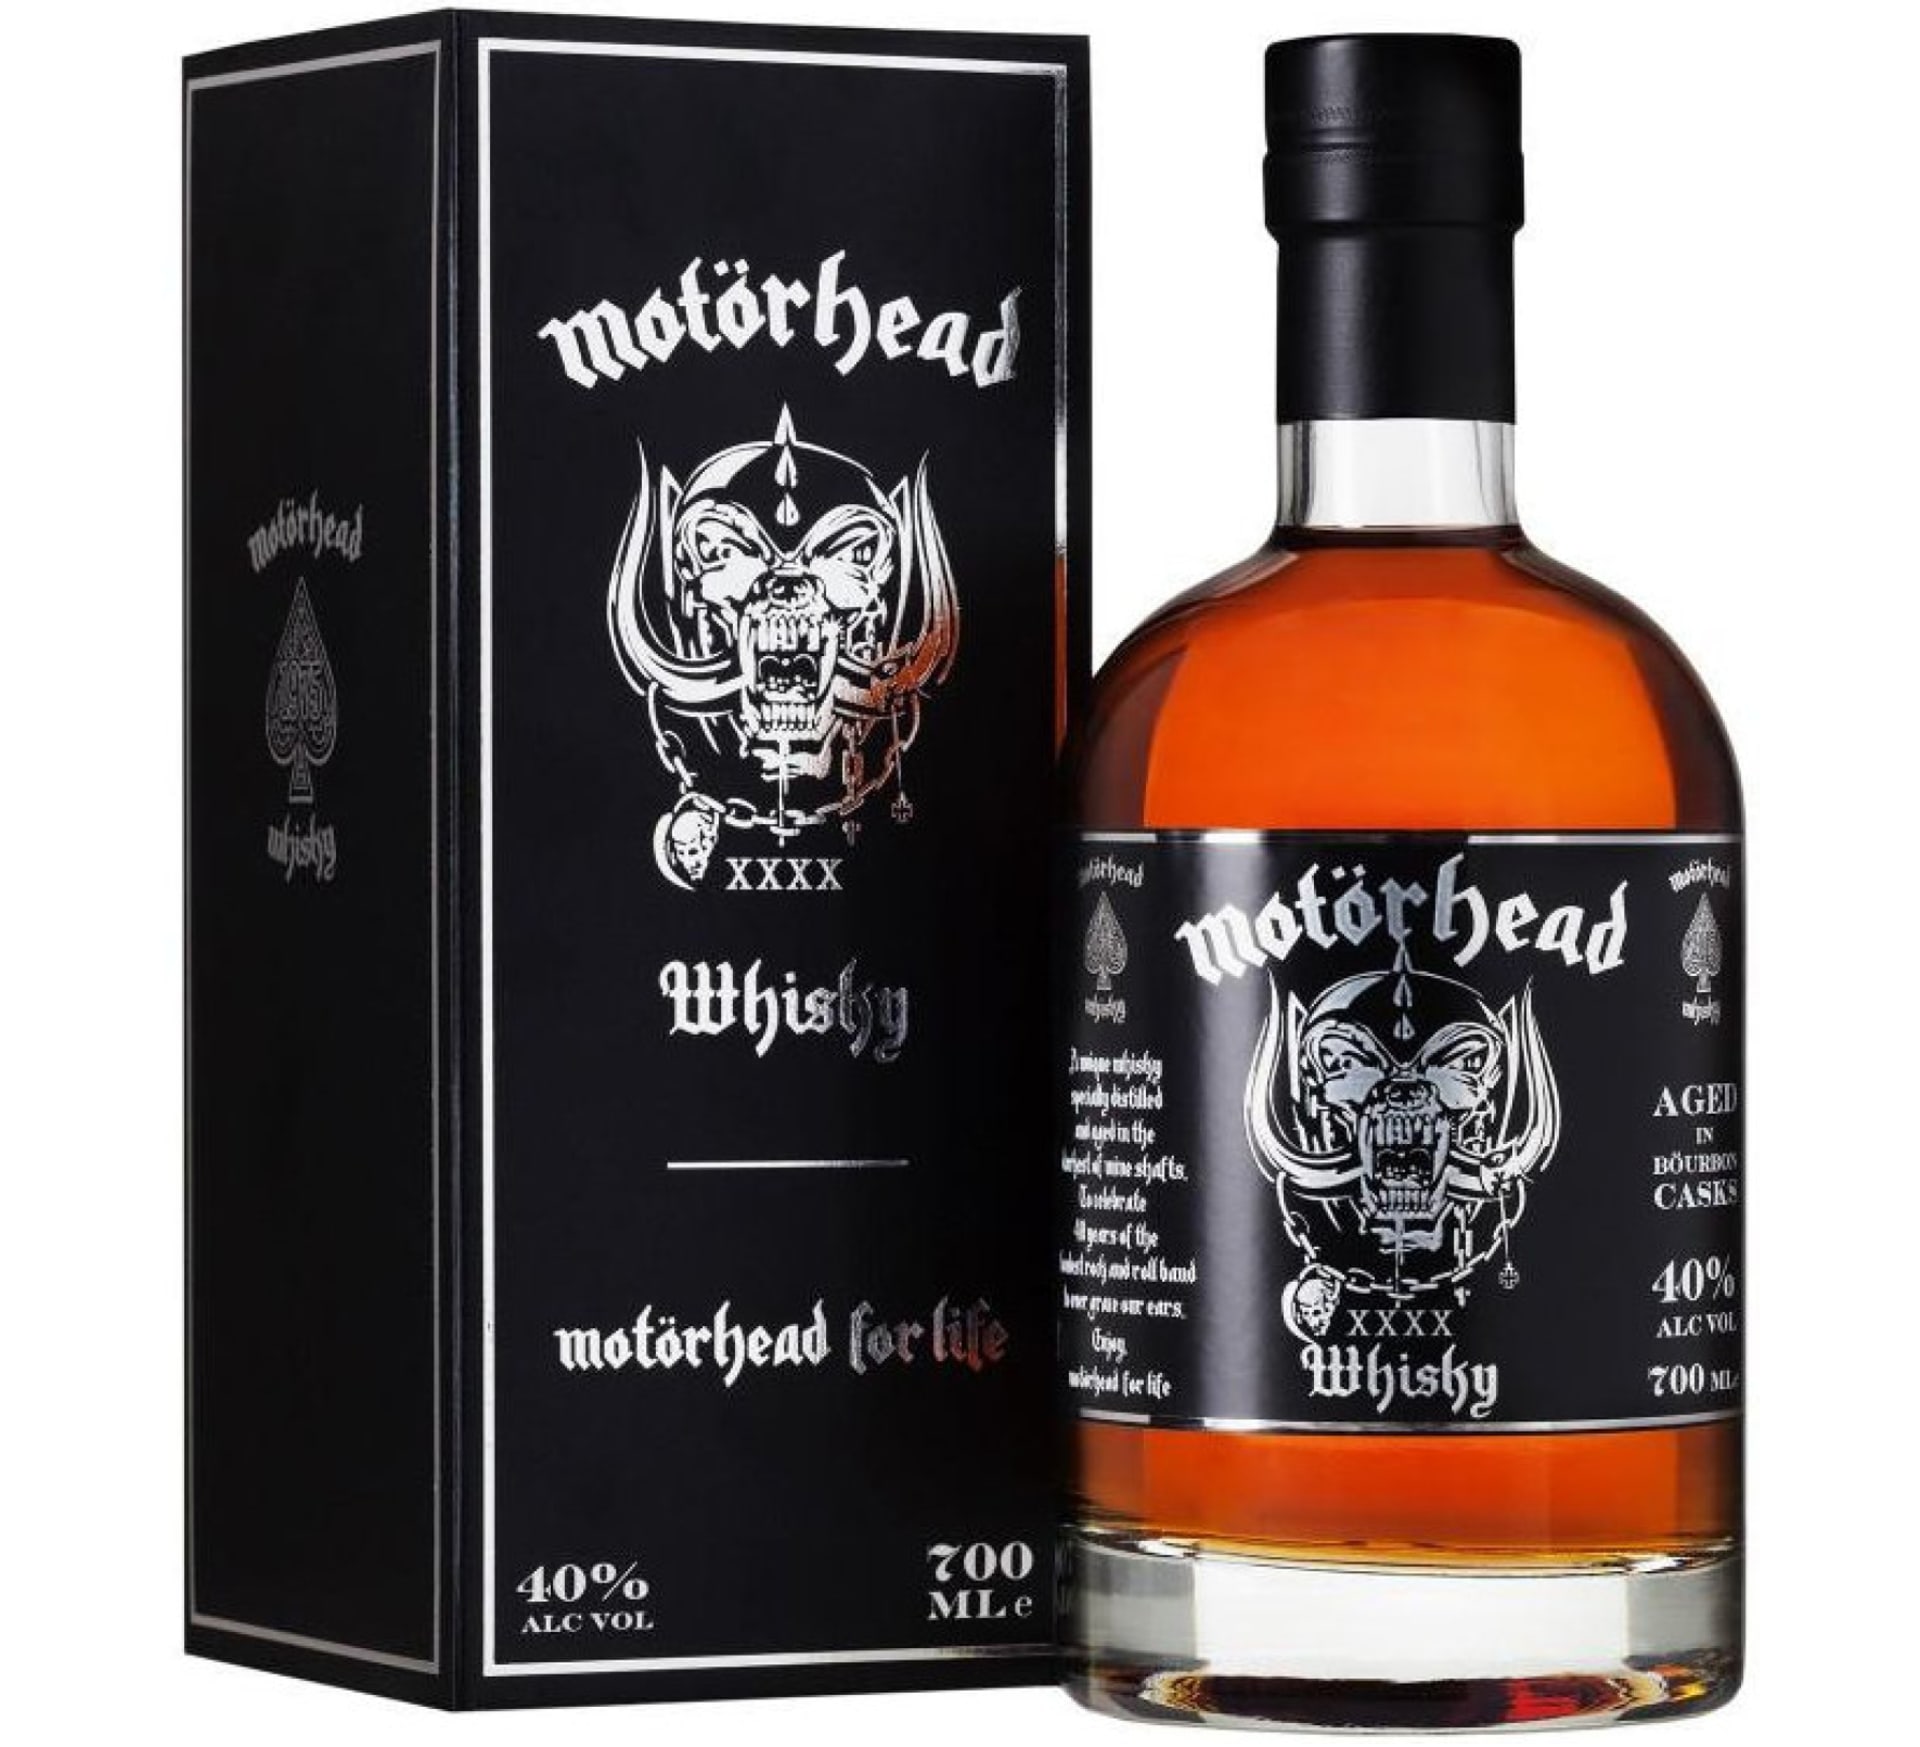 Motörhead XXXX whisky